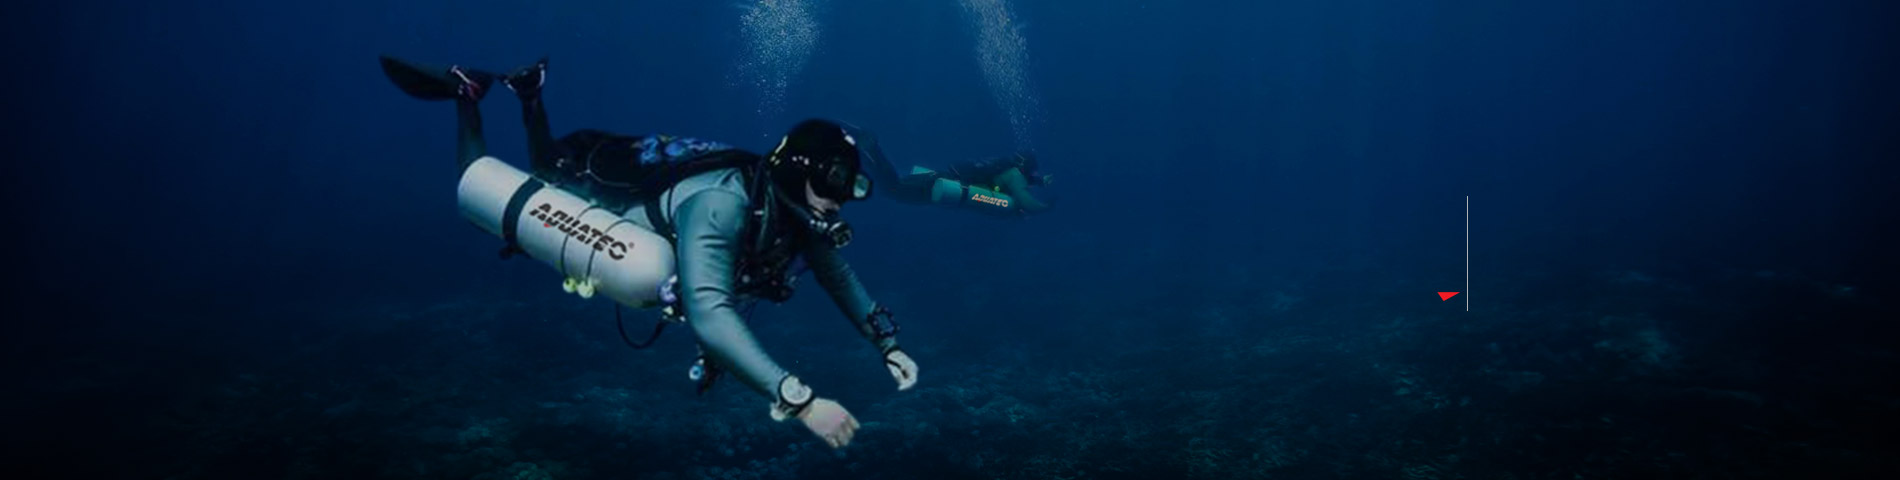 Objevte AQUATEC Profesionální vybavení pro potápění